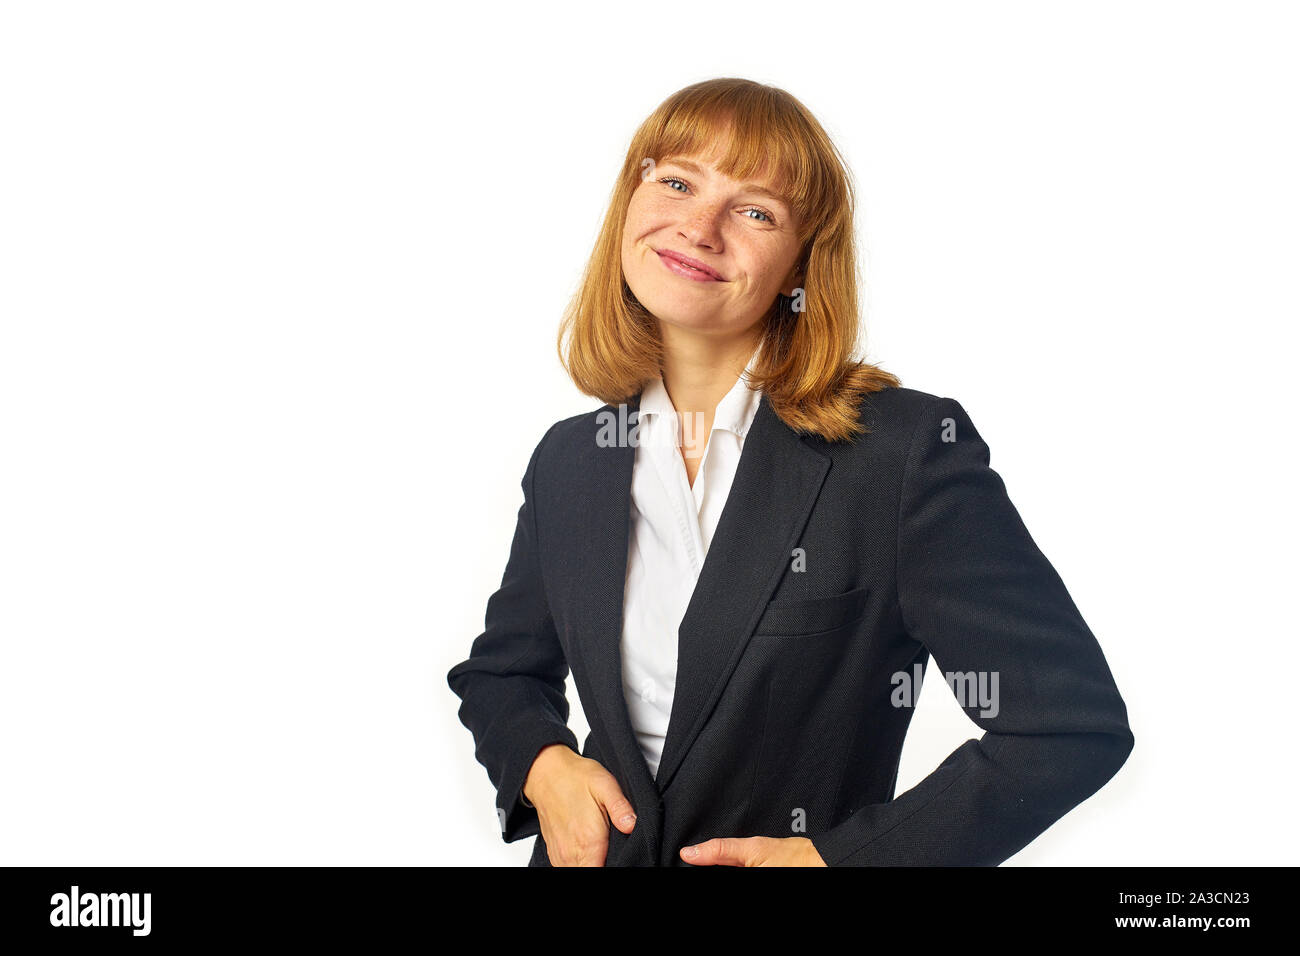 Image of female office worker habillé en chemise blanche et blazer sombre. Femme rousse en tenue d'affaires à happyly à la caméra et smili Banque D'Images